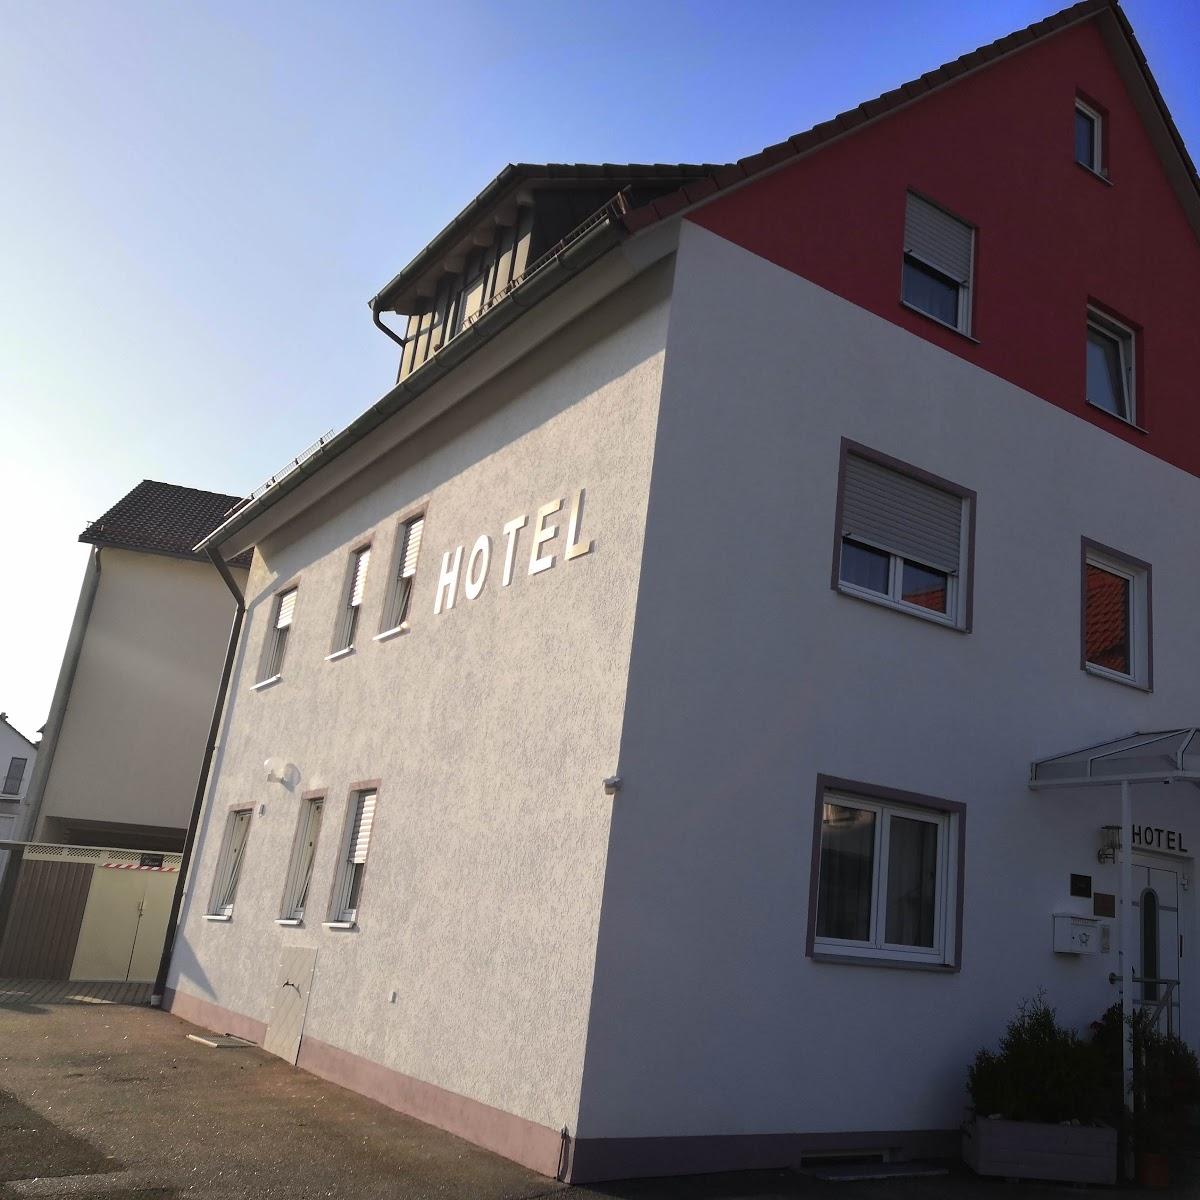 Restaurant "Hotel Harbauer" in Schwarzenbruck